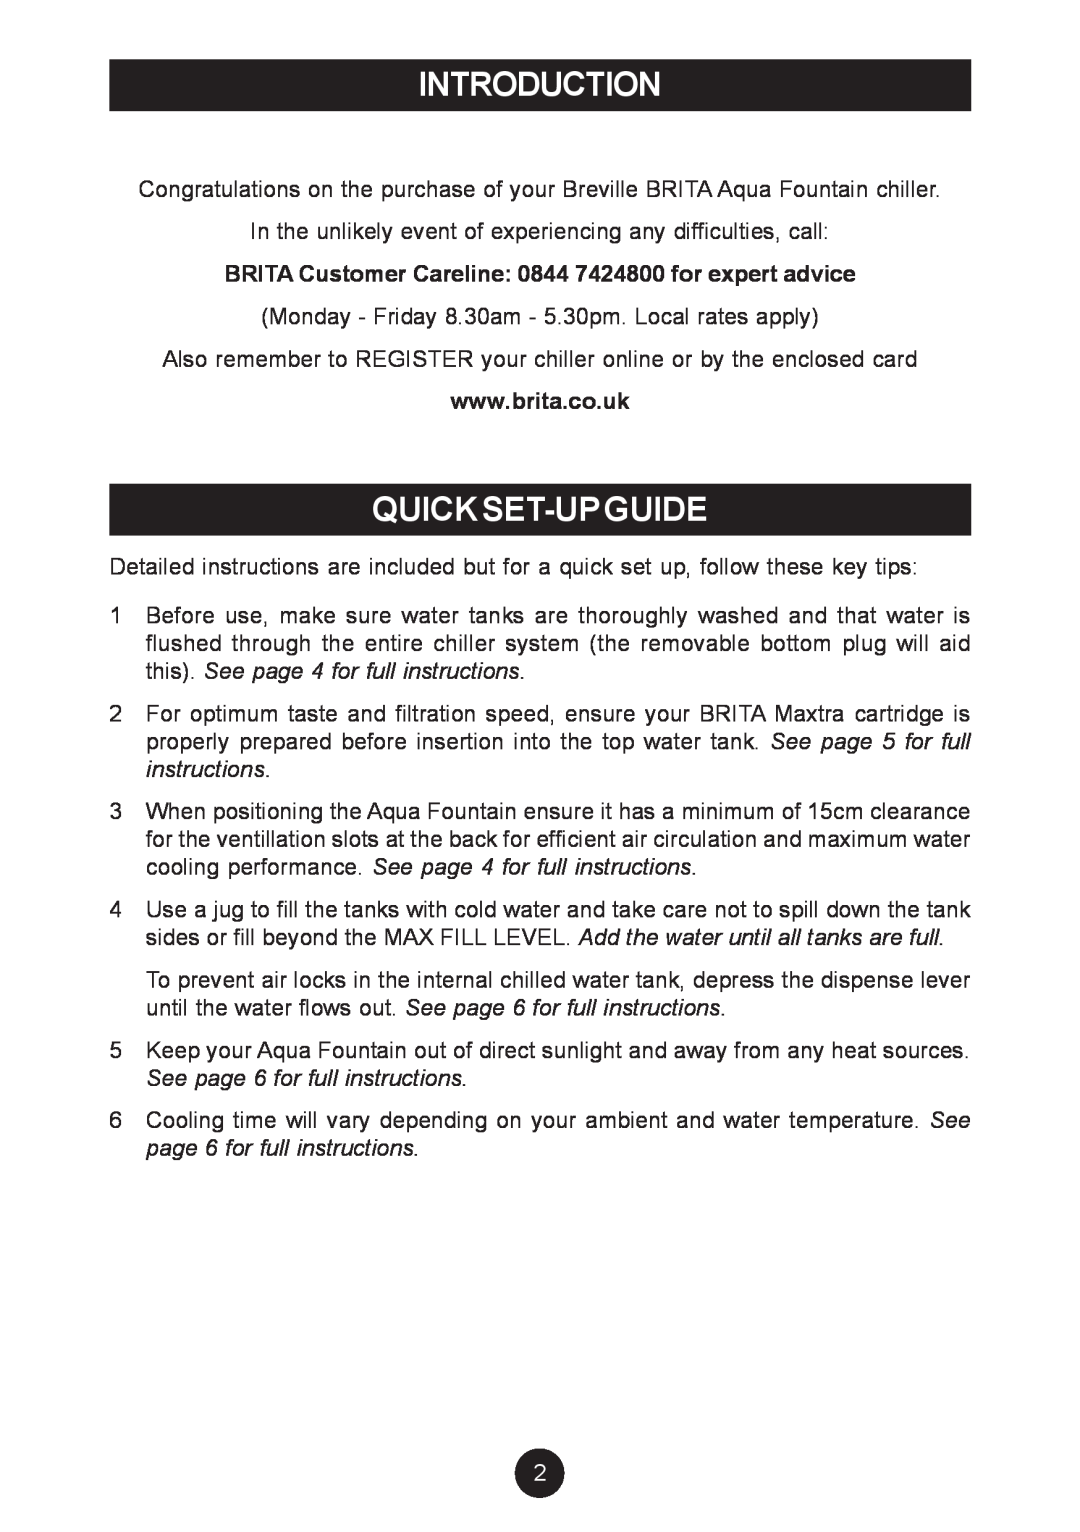 Breville AF5, AF6 manual Introduction, Quickset-Upguide, BRITA Customer Careline 0844 7424800 for expert advice 